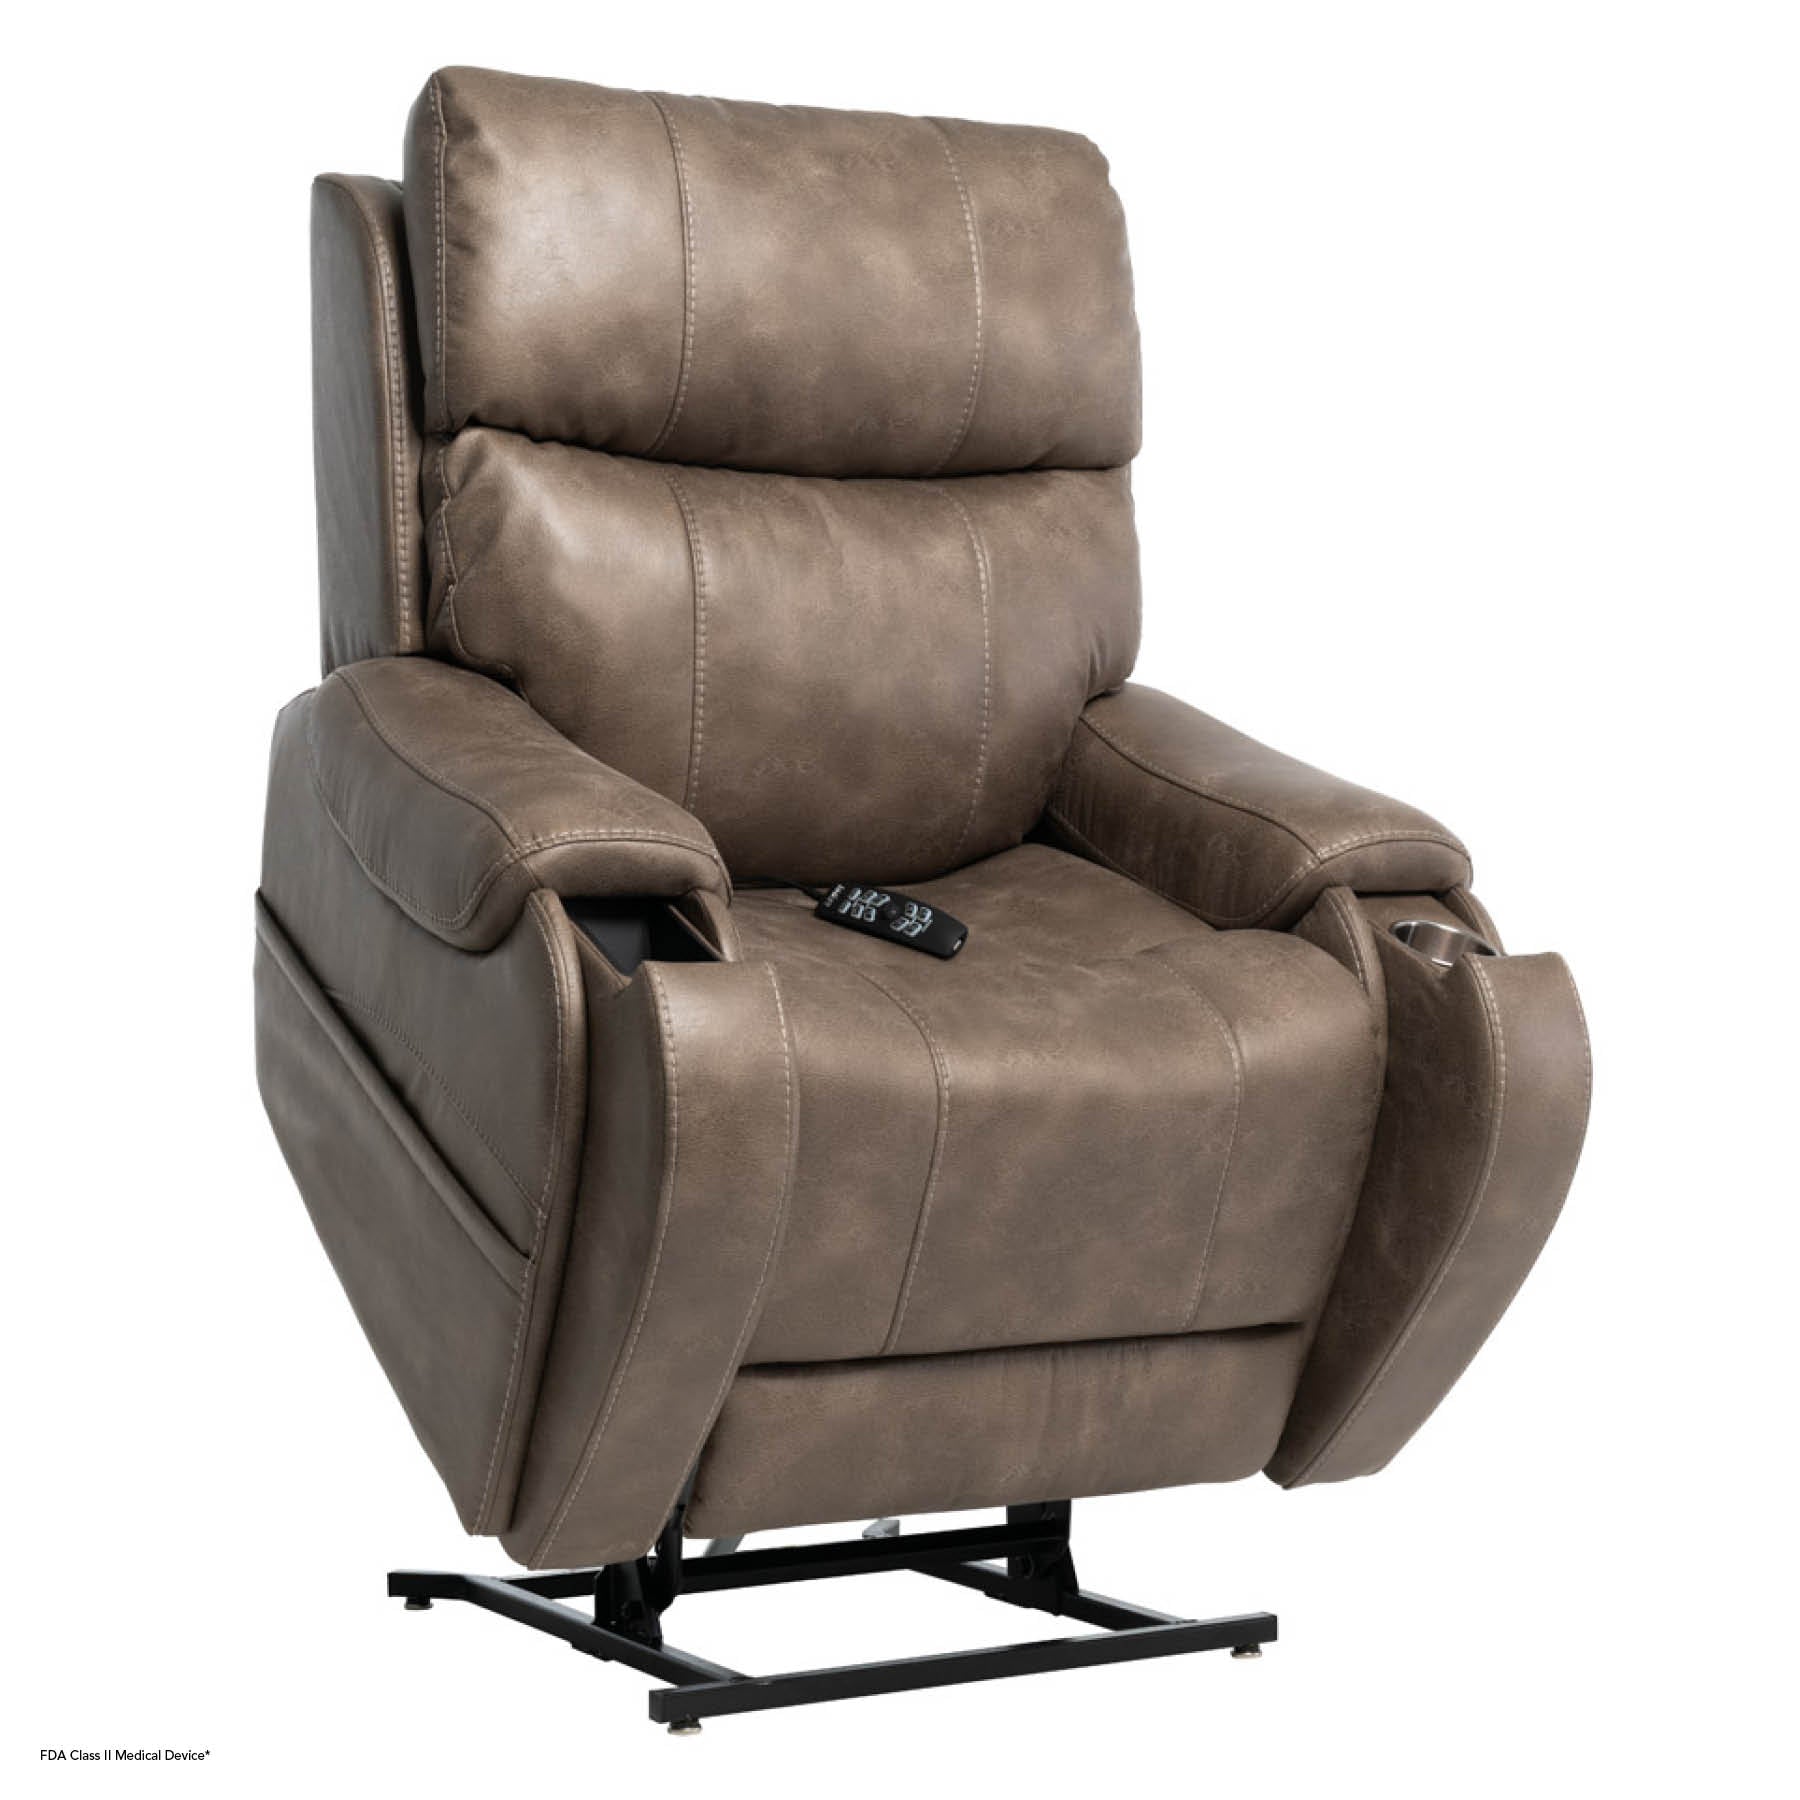 VivaLift Radiance PLR-3955S Lift Chair